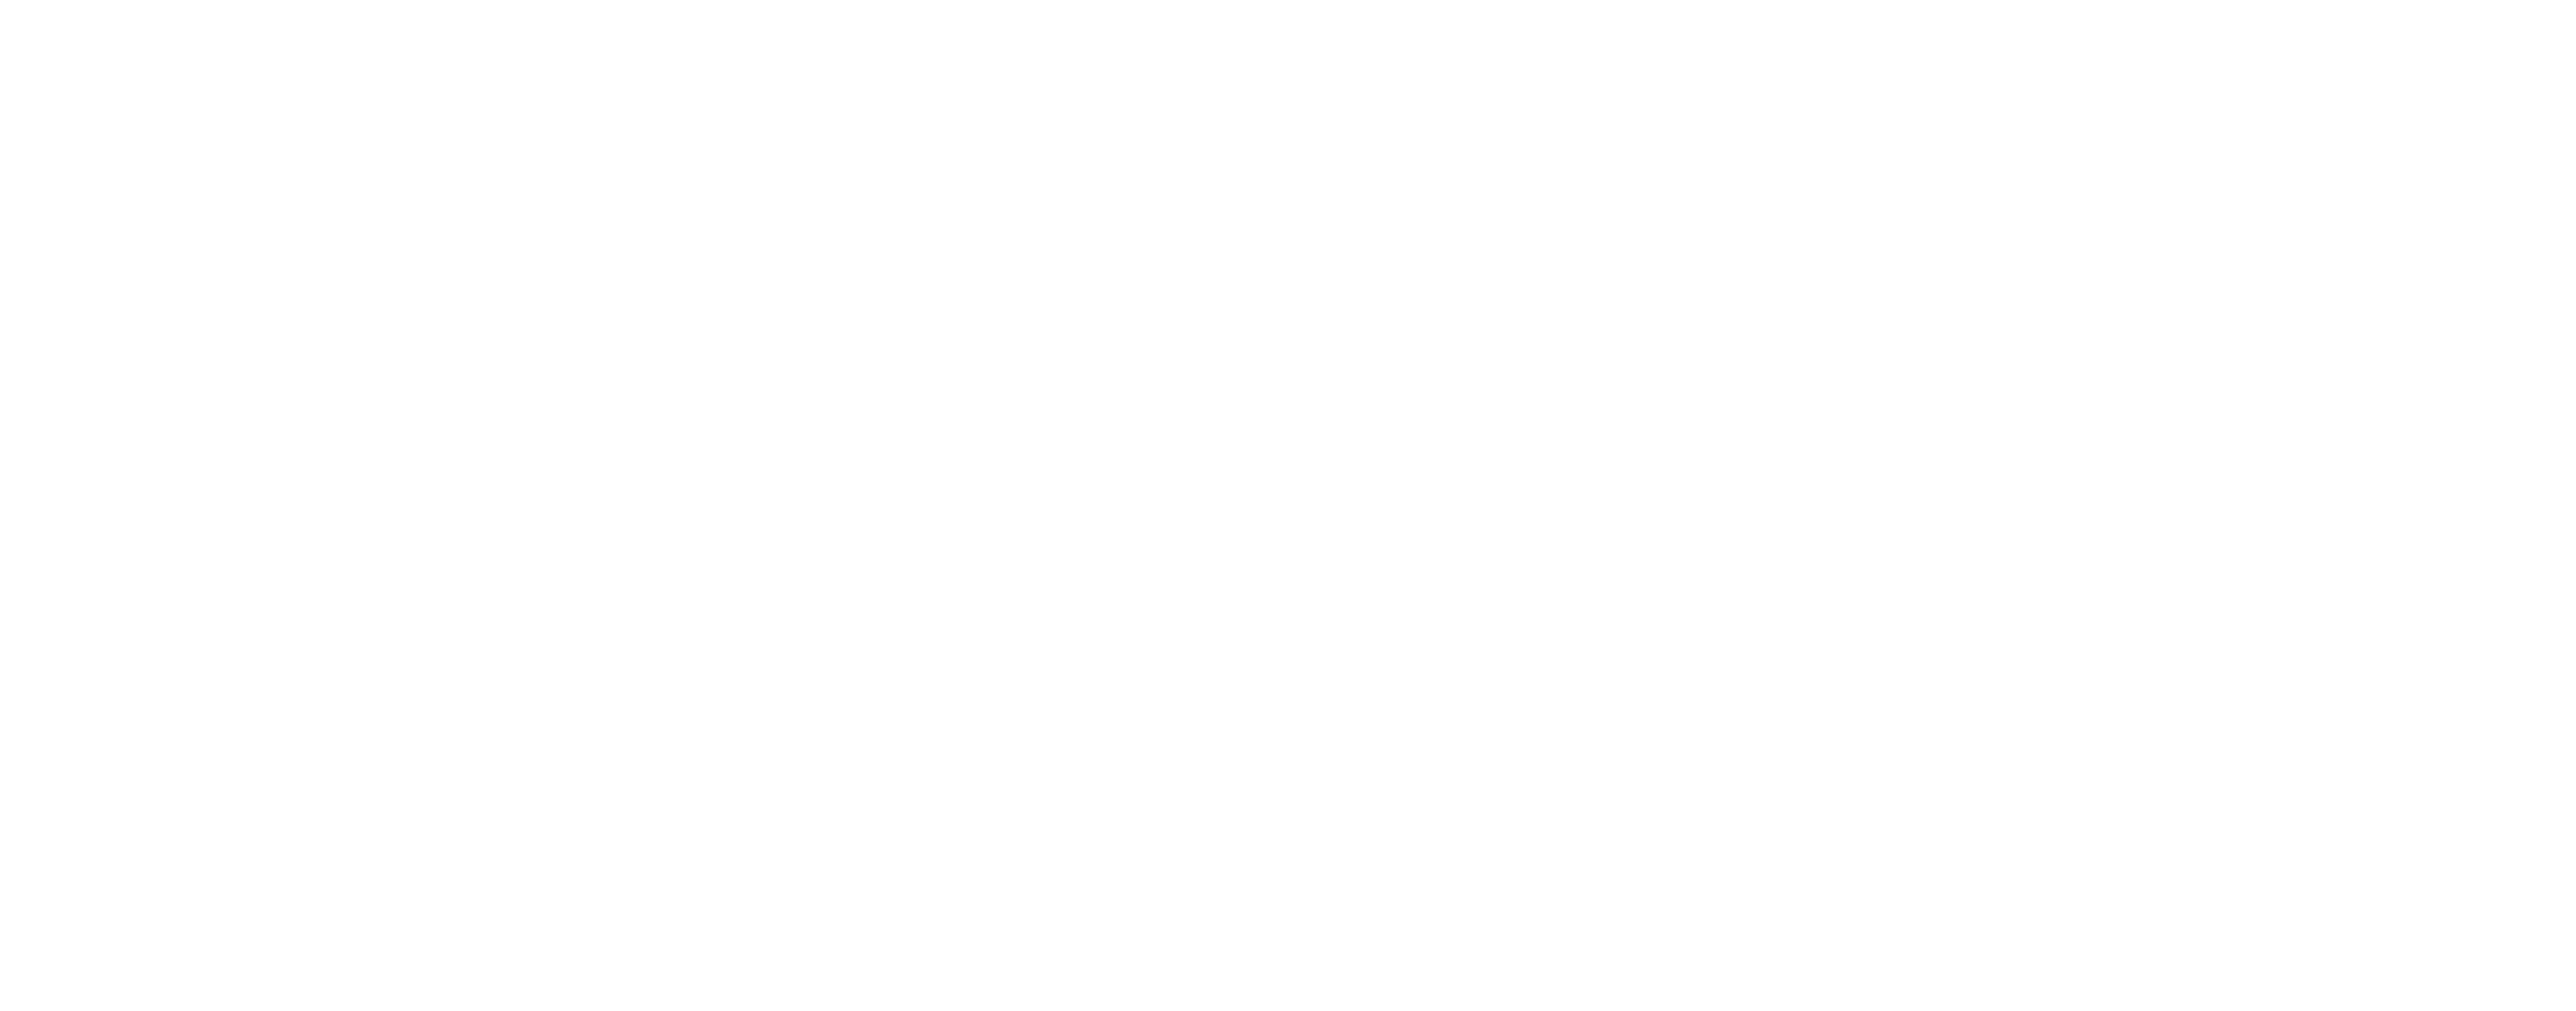 Clan of the Meerkat logo